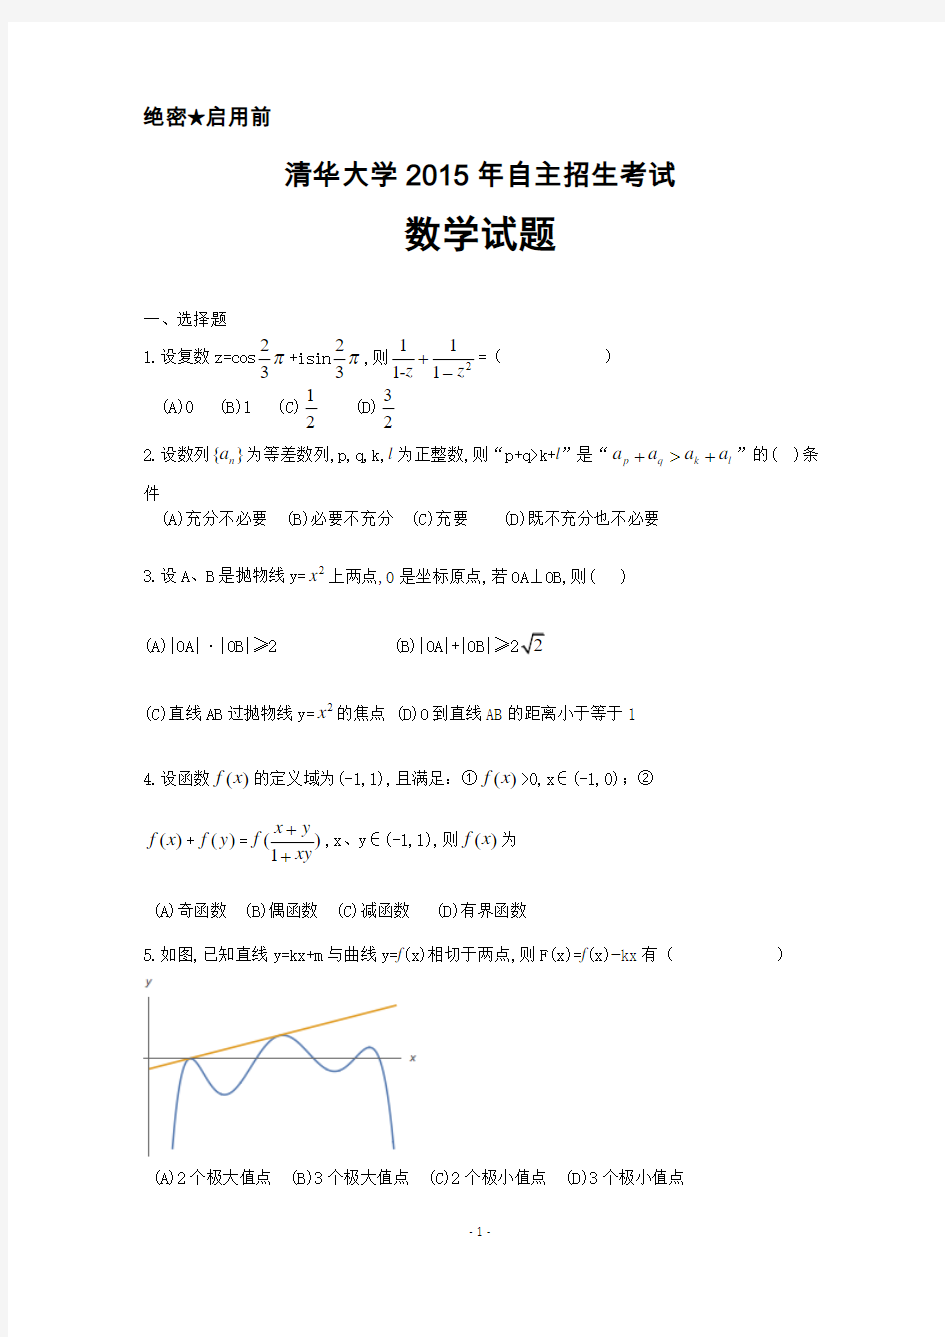 清华大学2015年自主招生数学试题及答案解析